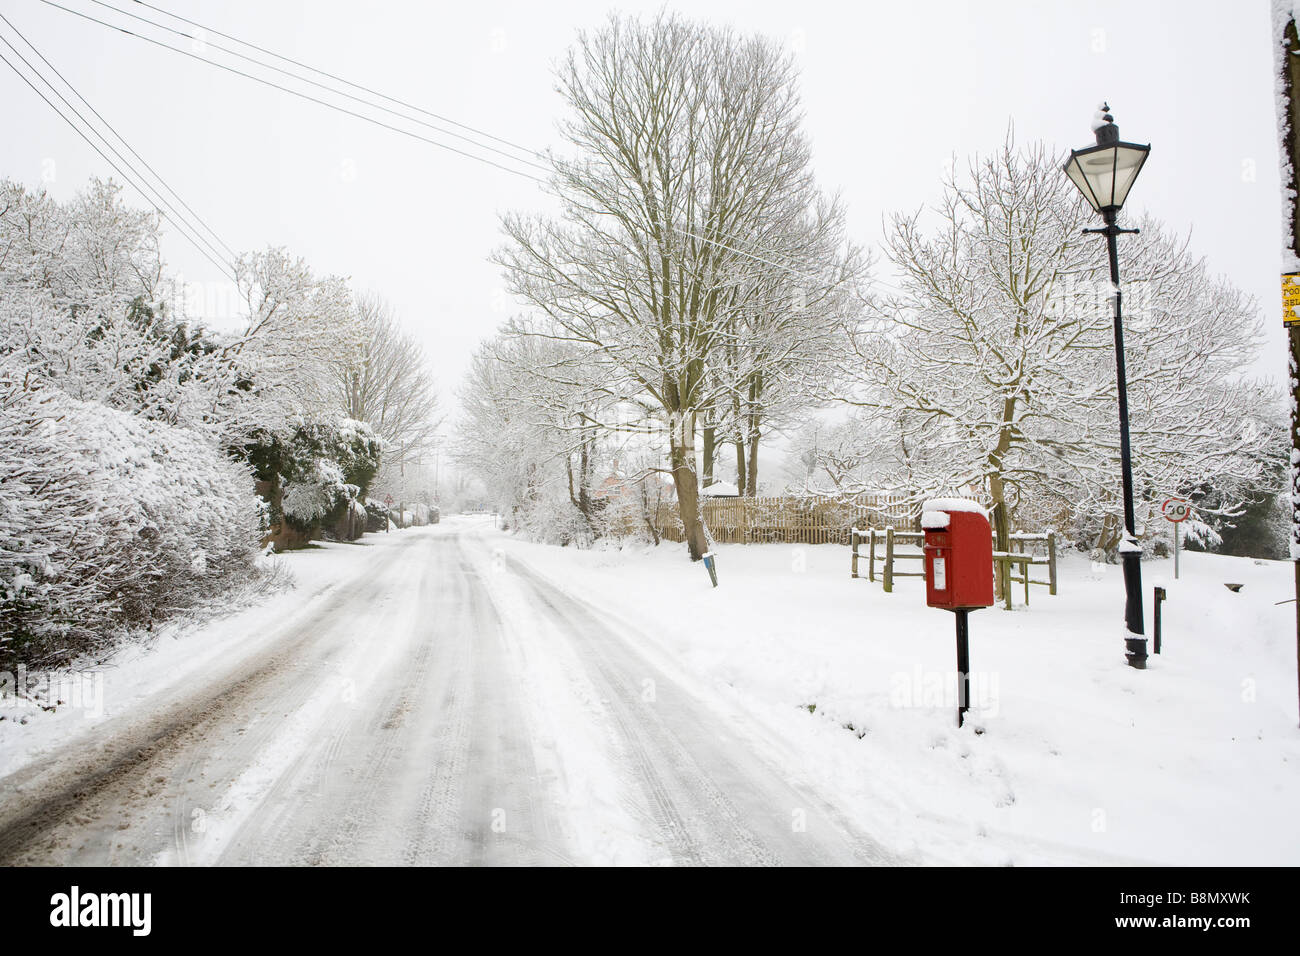 Royal Mail rot Briefkasten und traditionellen Stil Laterne im Schnee bedeckt Buckinghamshire Dorf Askett. Stockfoto